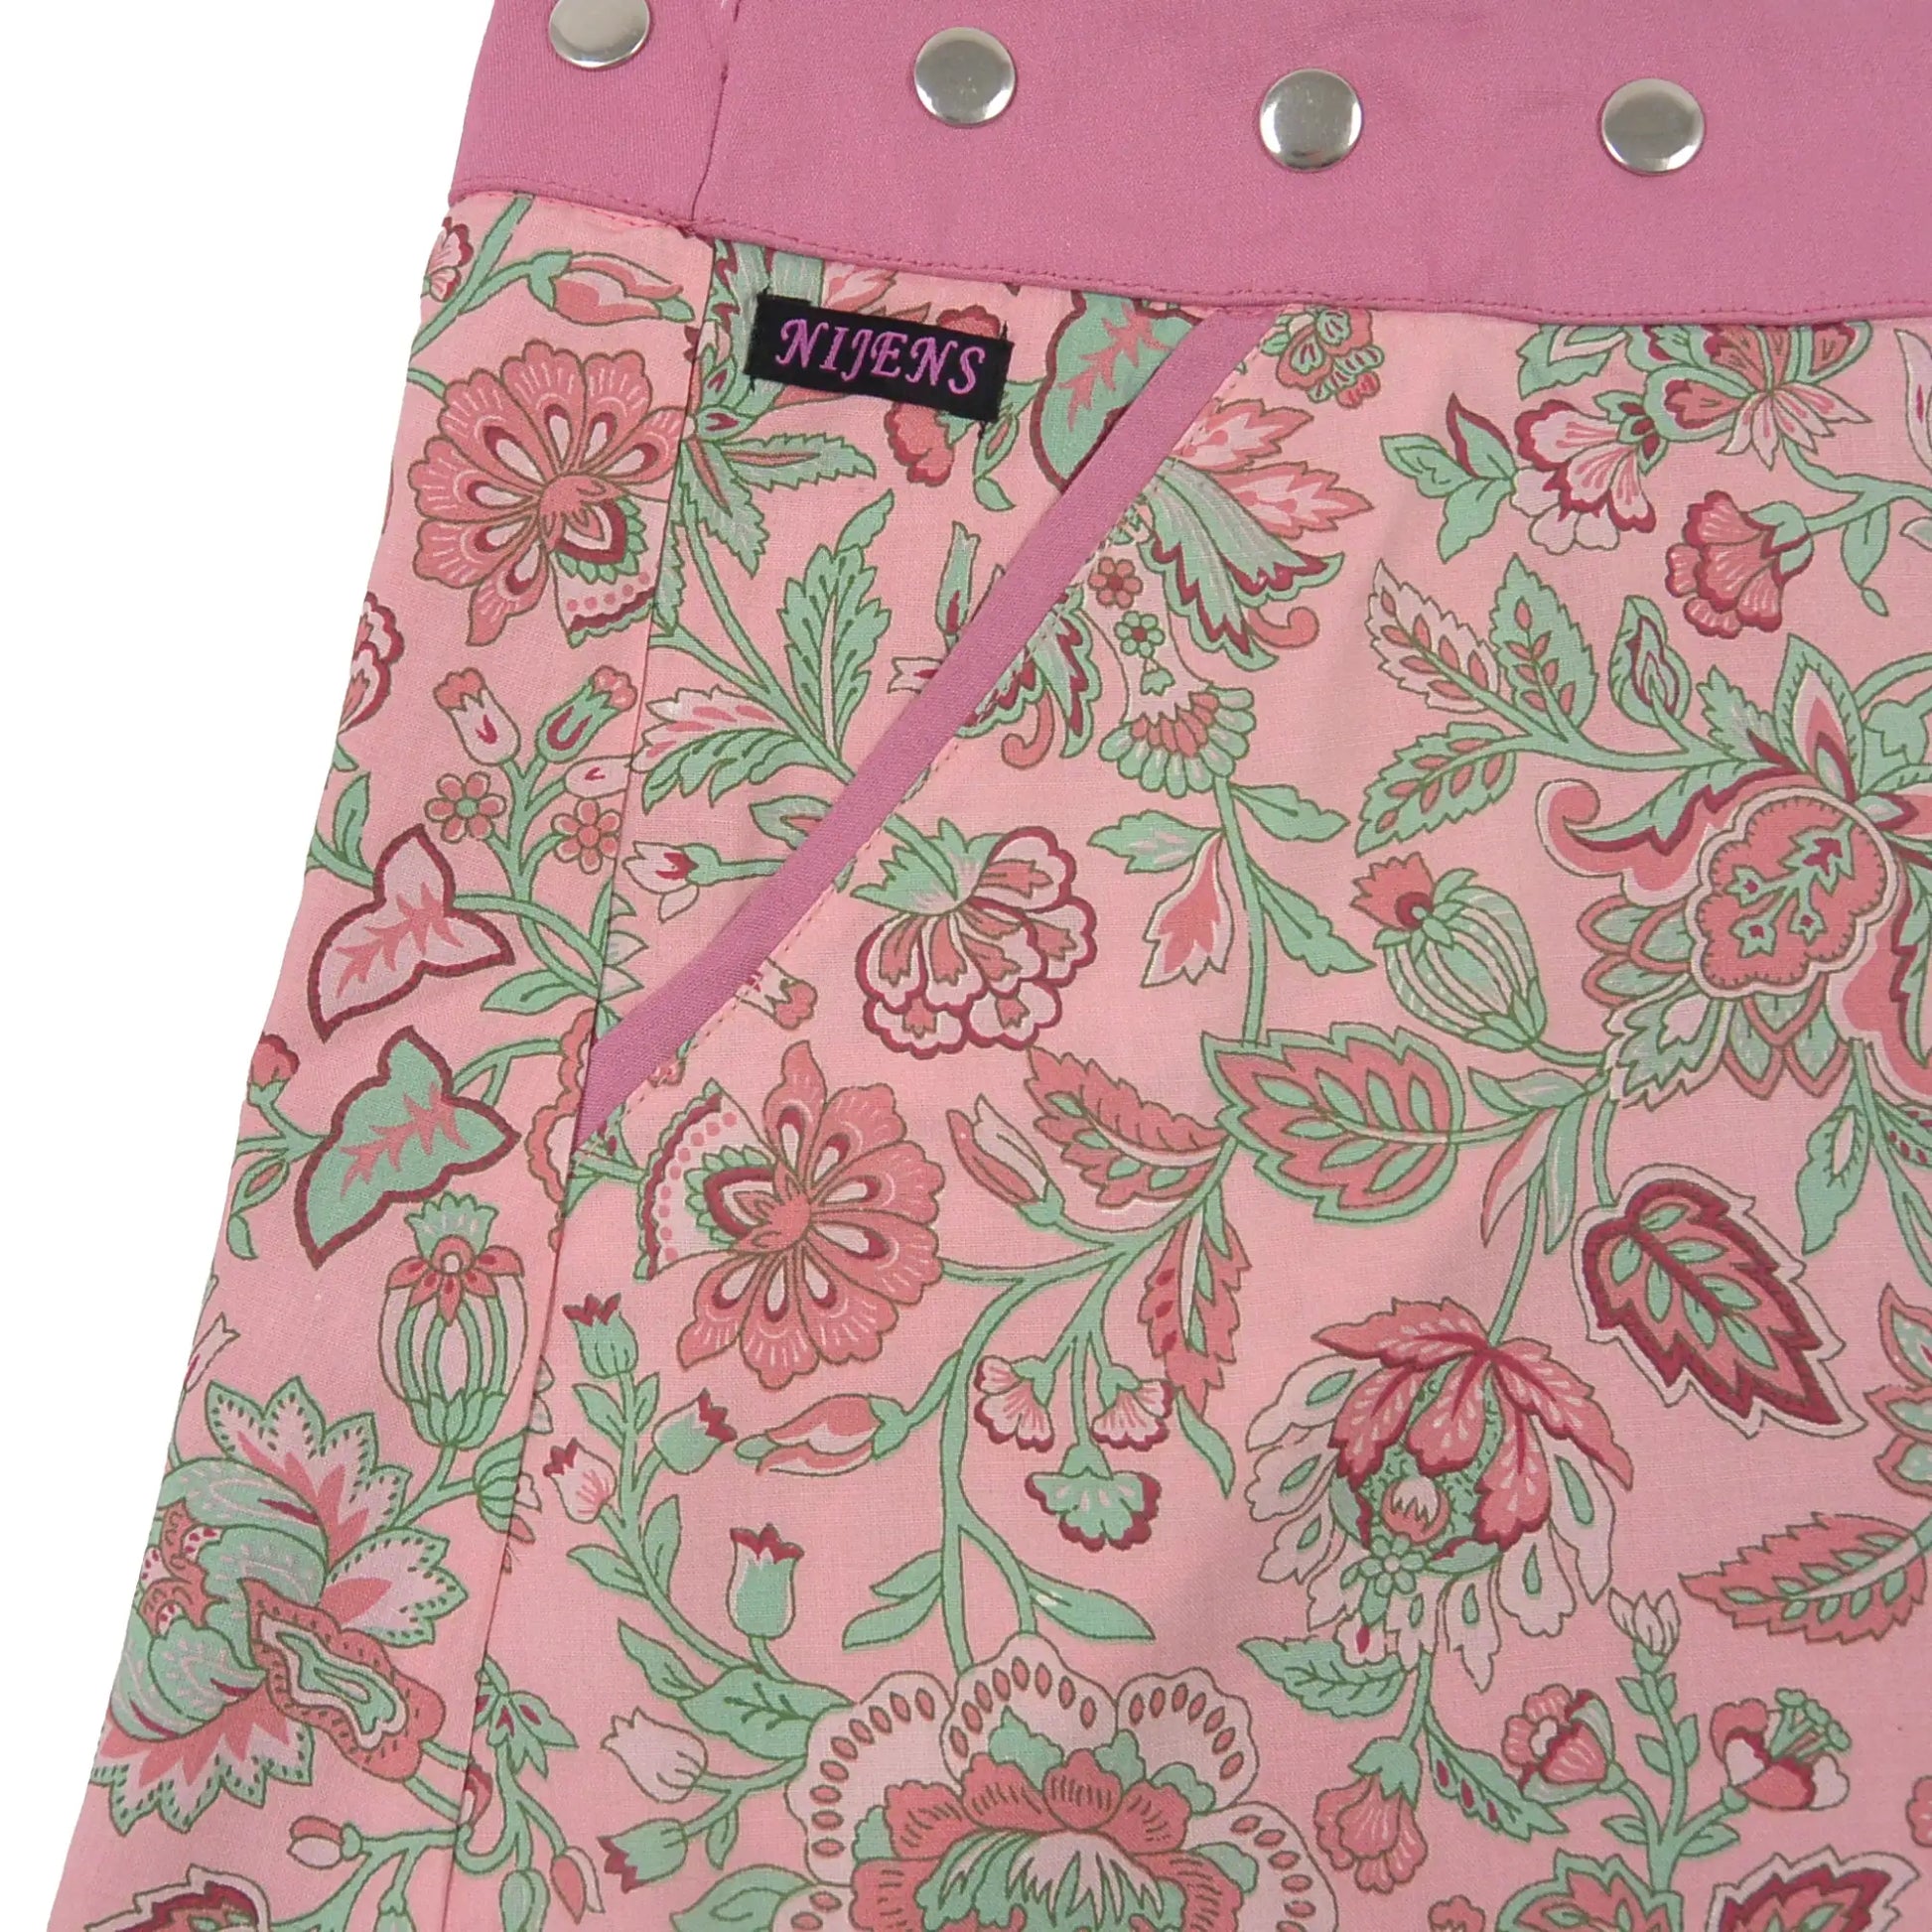 Wenderock, Wickelrock aus Rayonstoff in Rosa mit Blumenmuster. Der Umfang ist einstellbar mit einer Druckknopfleiste. Ausschnitt Eingrifftasche an der Seite.